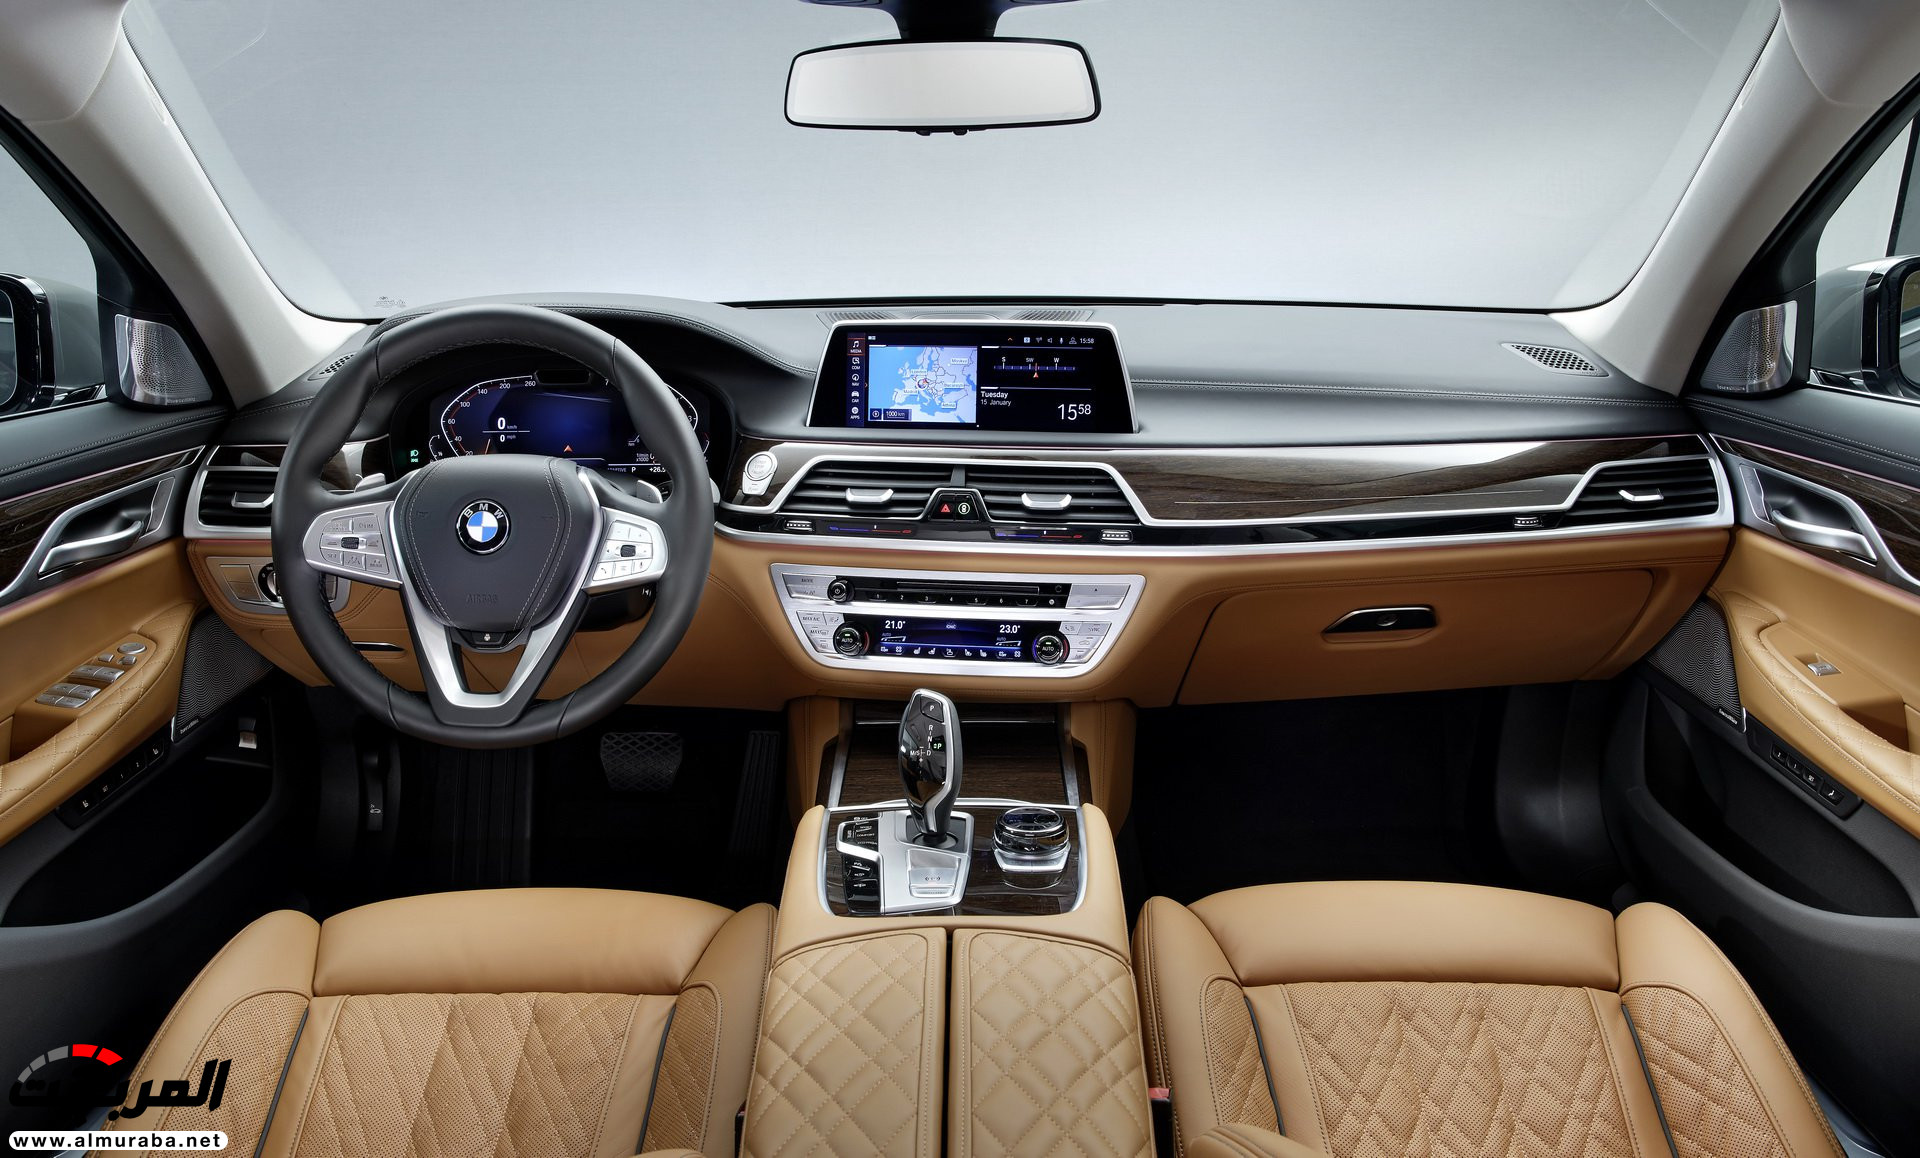 بي ام دبليو الفئة السابعة 2020 المحدثة تكشف نفسها رسمياً "صور ومواصفات" BMW 7 Series 43